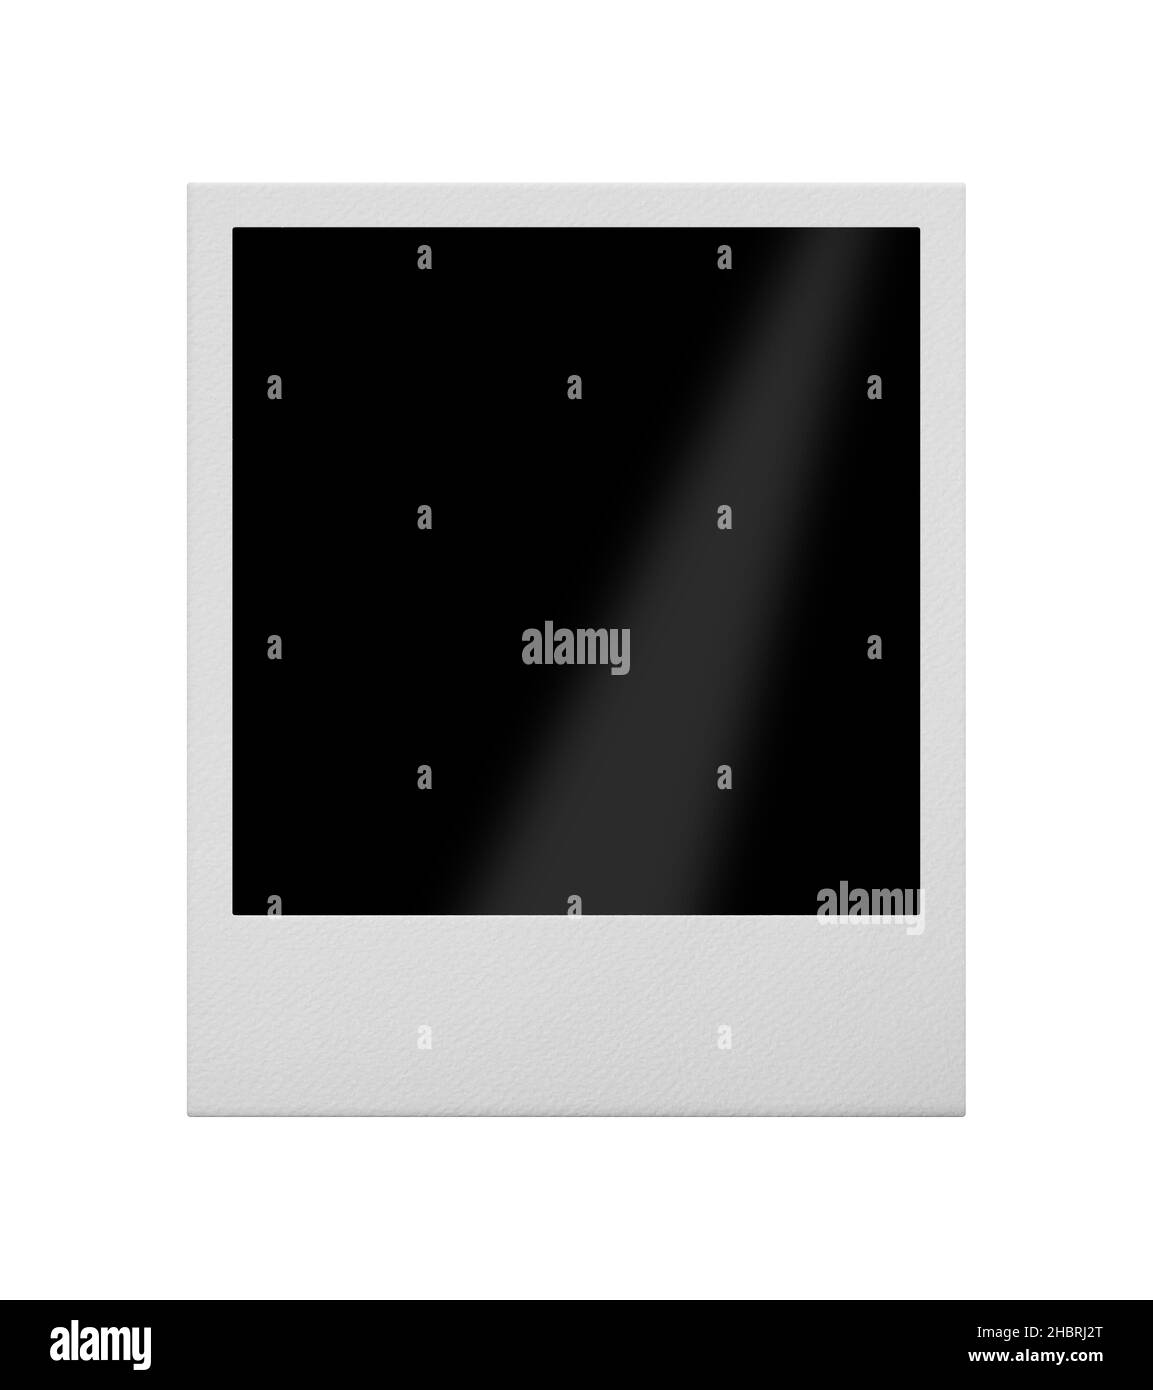 Polaroid frame Black and White Stock Photos & Images - Alamy